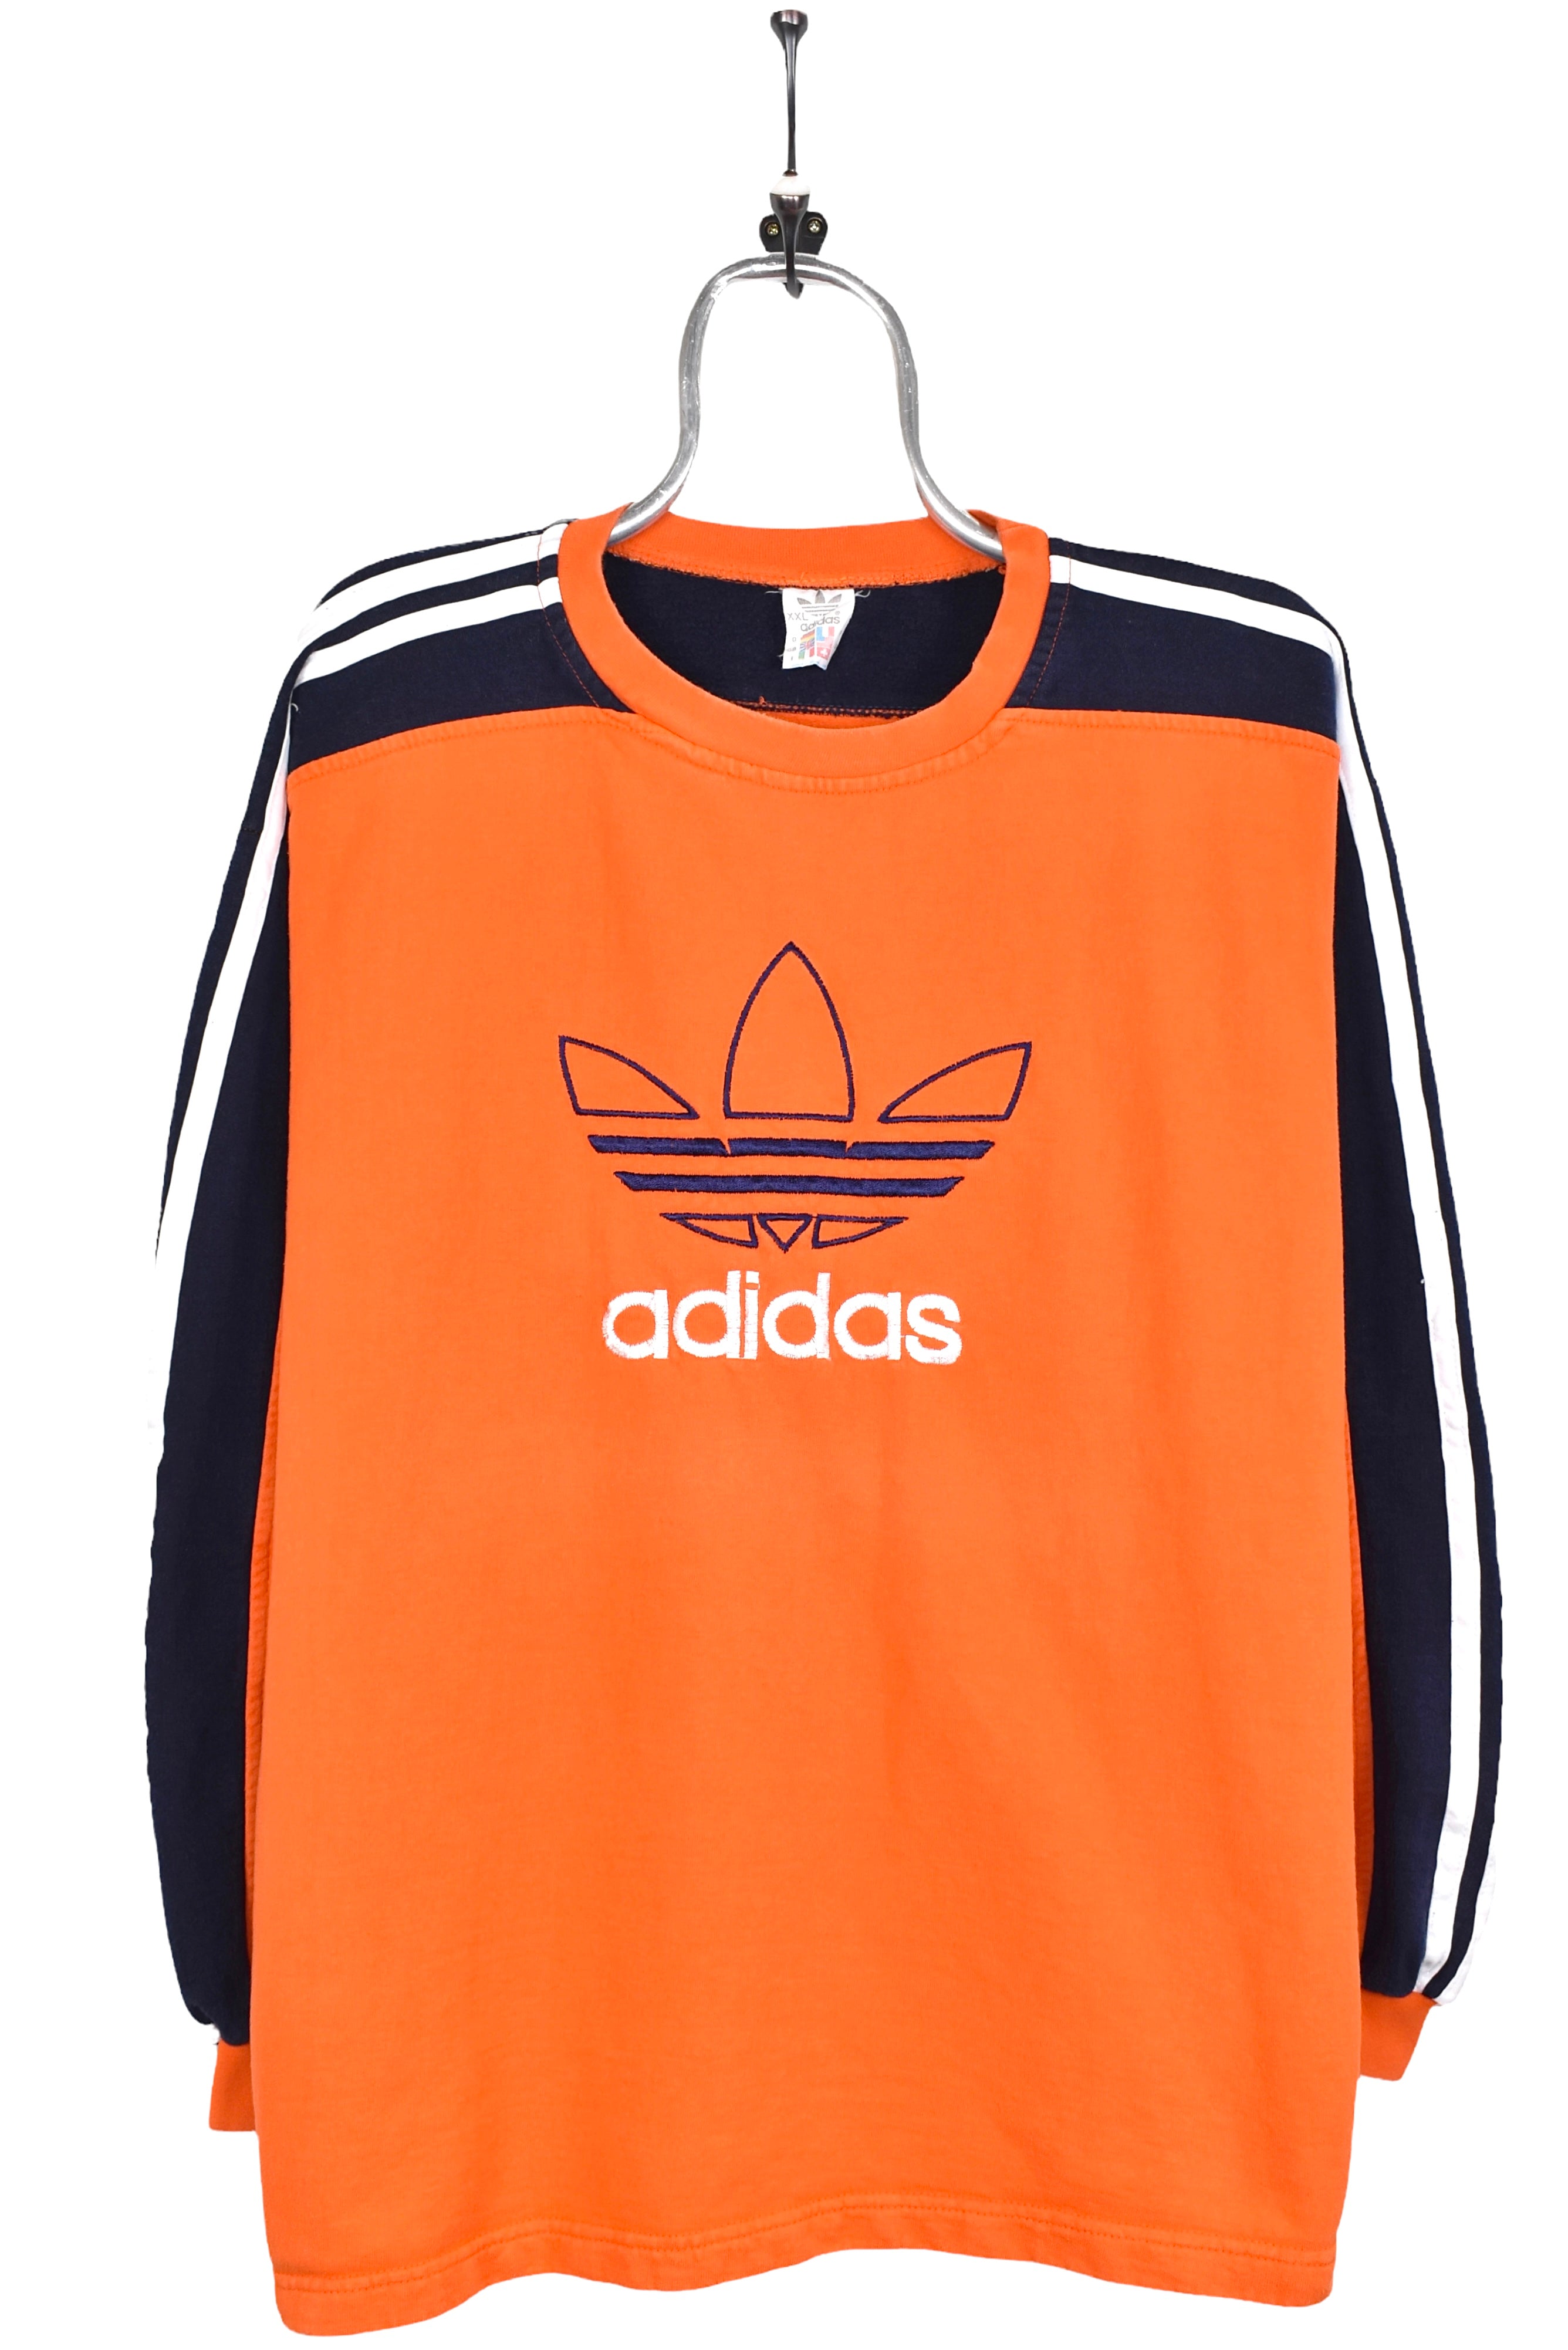 Vintage Adidas sweatshirt, orange embroidered crewneck - AU XL ADIDAS